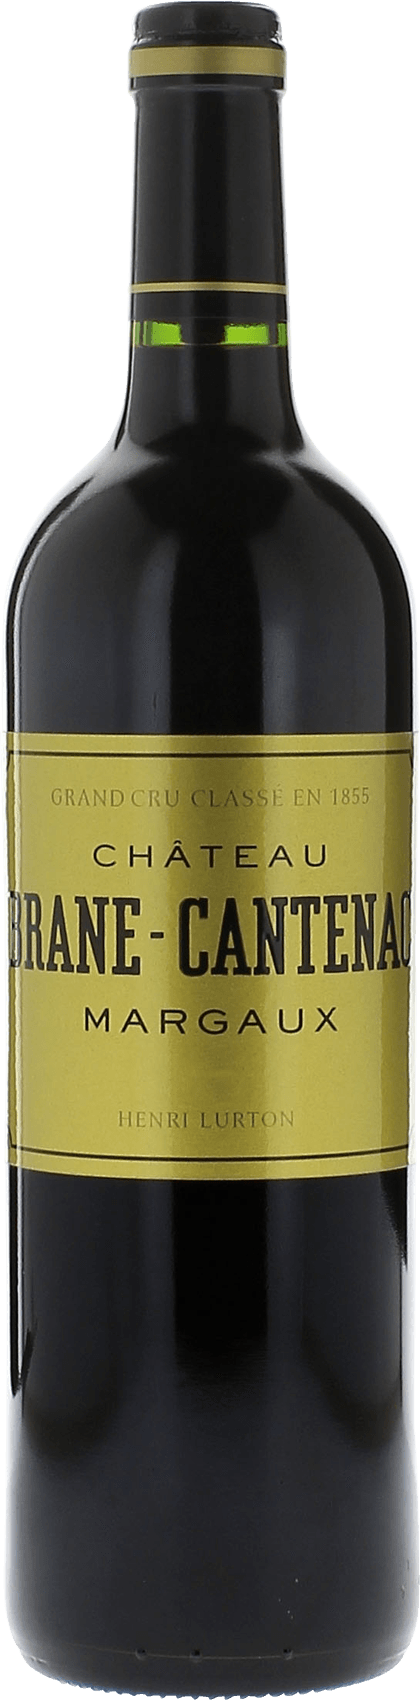 Brane-cantenac  2019 2me Grand cru class Margaux, Bordeaux rouge